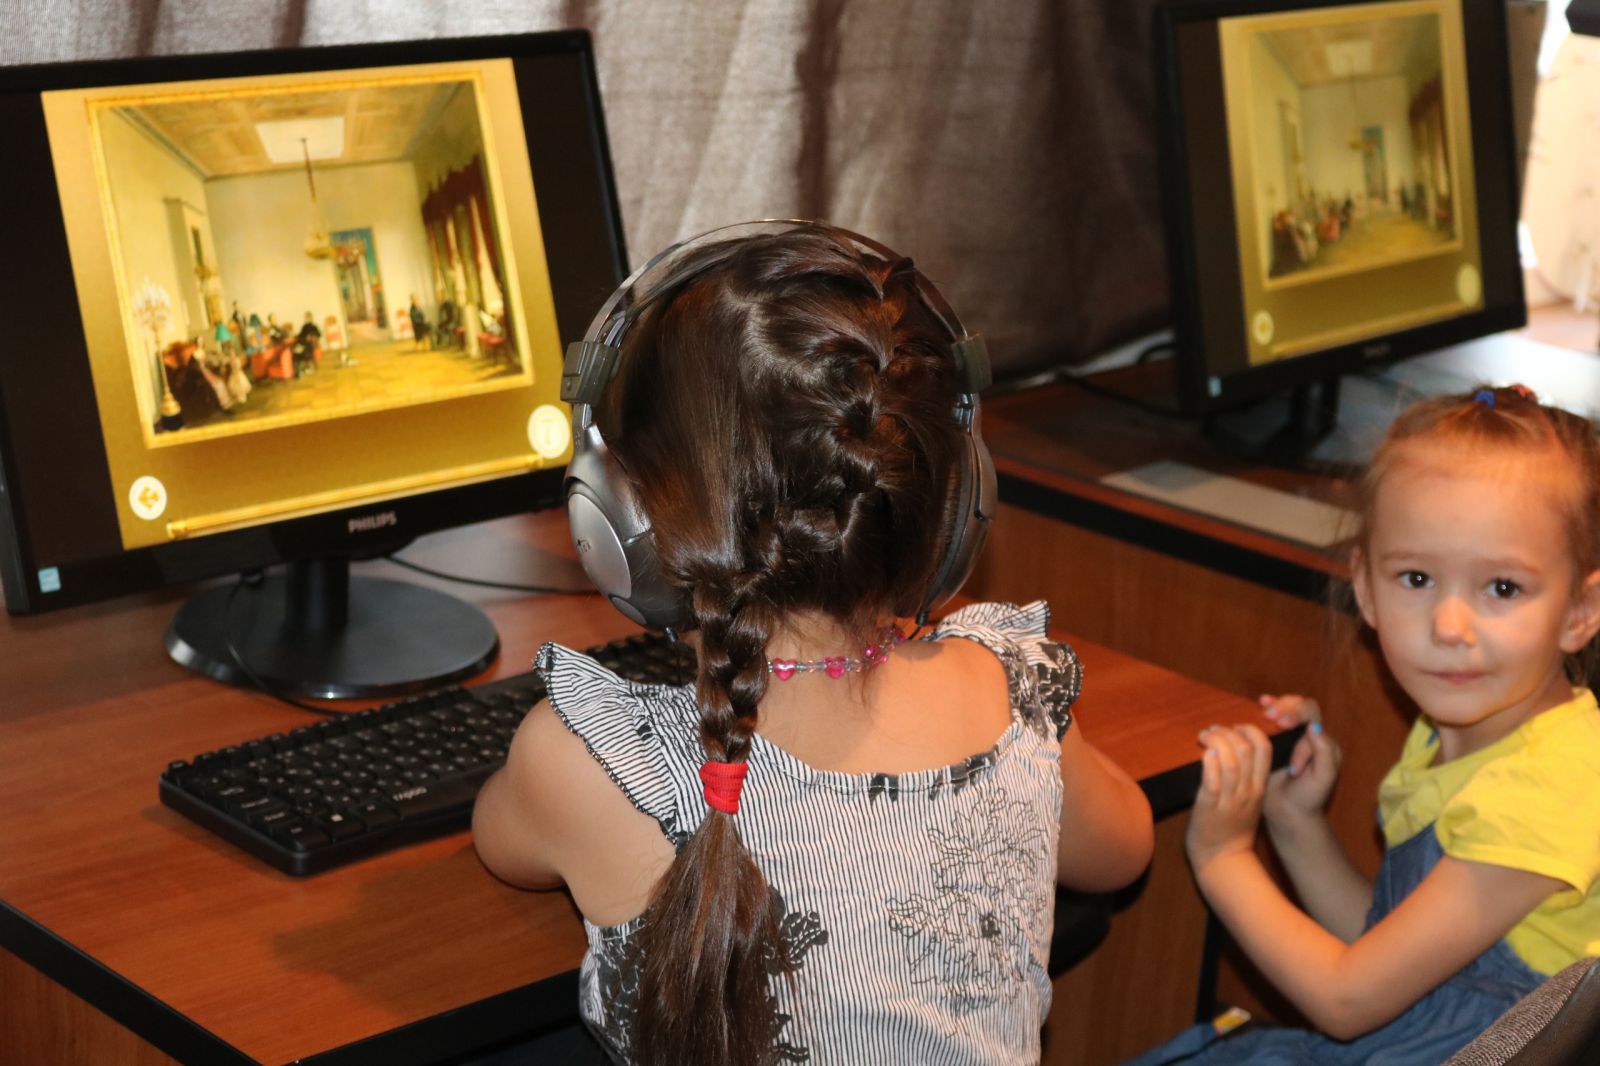 17 июня. Игротека для детей на базе медиатеки виртуального филиала Русского музея